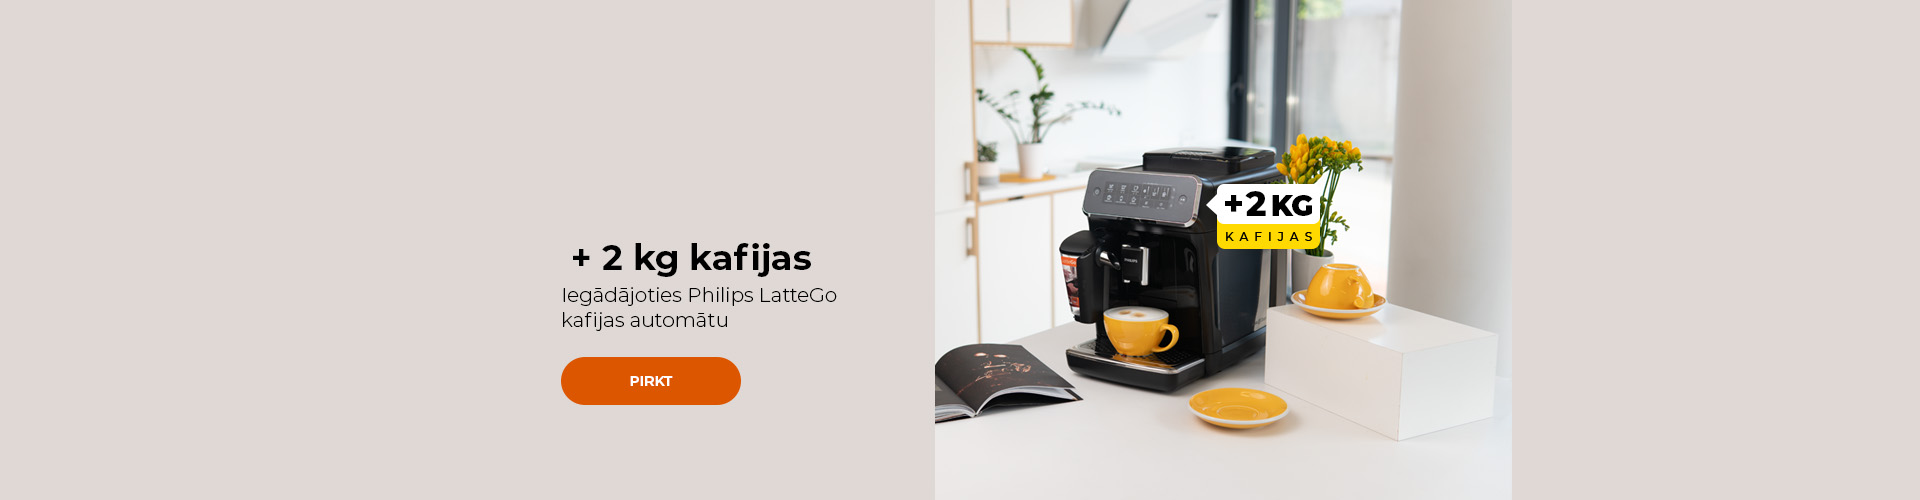 Iegādājoties Philips LatteGo kafijas automātu + 2 kg kafijas